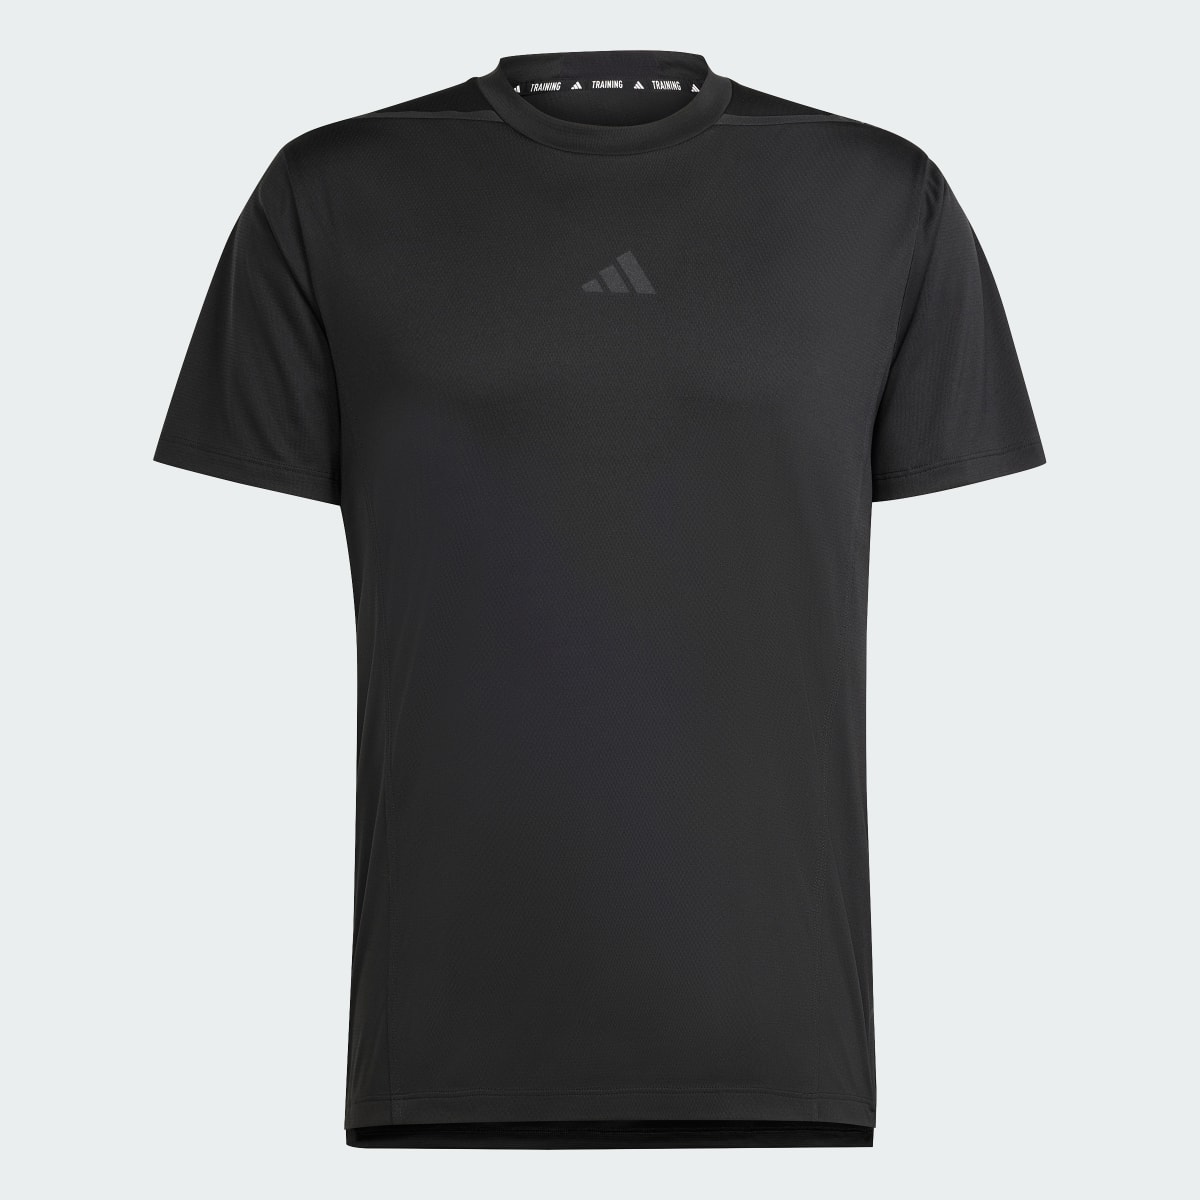 Adidas Camiseta Designed for Training Adistrong Workout. 6